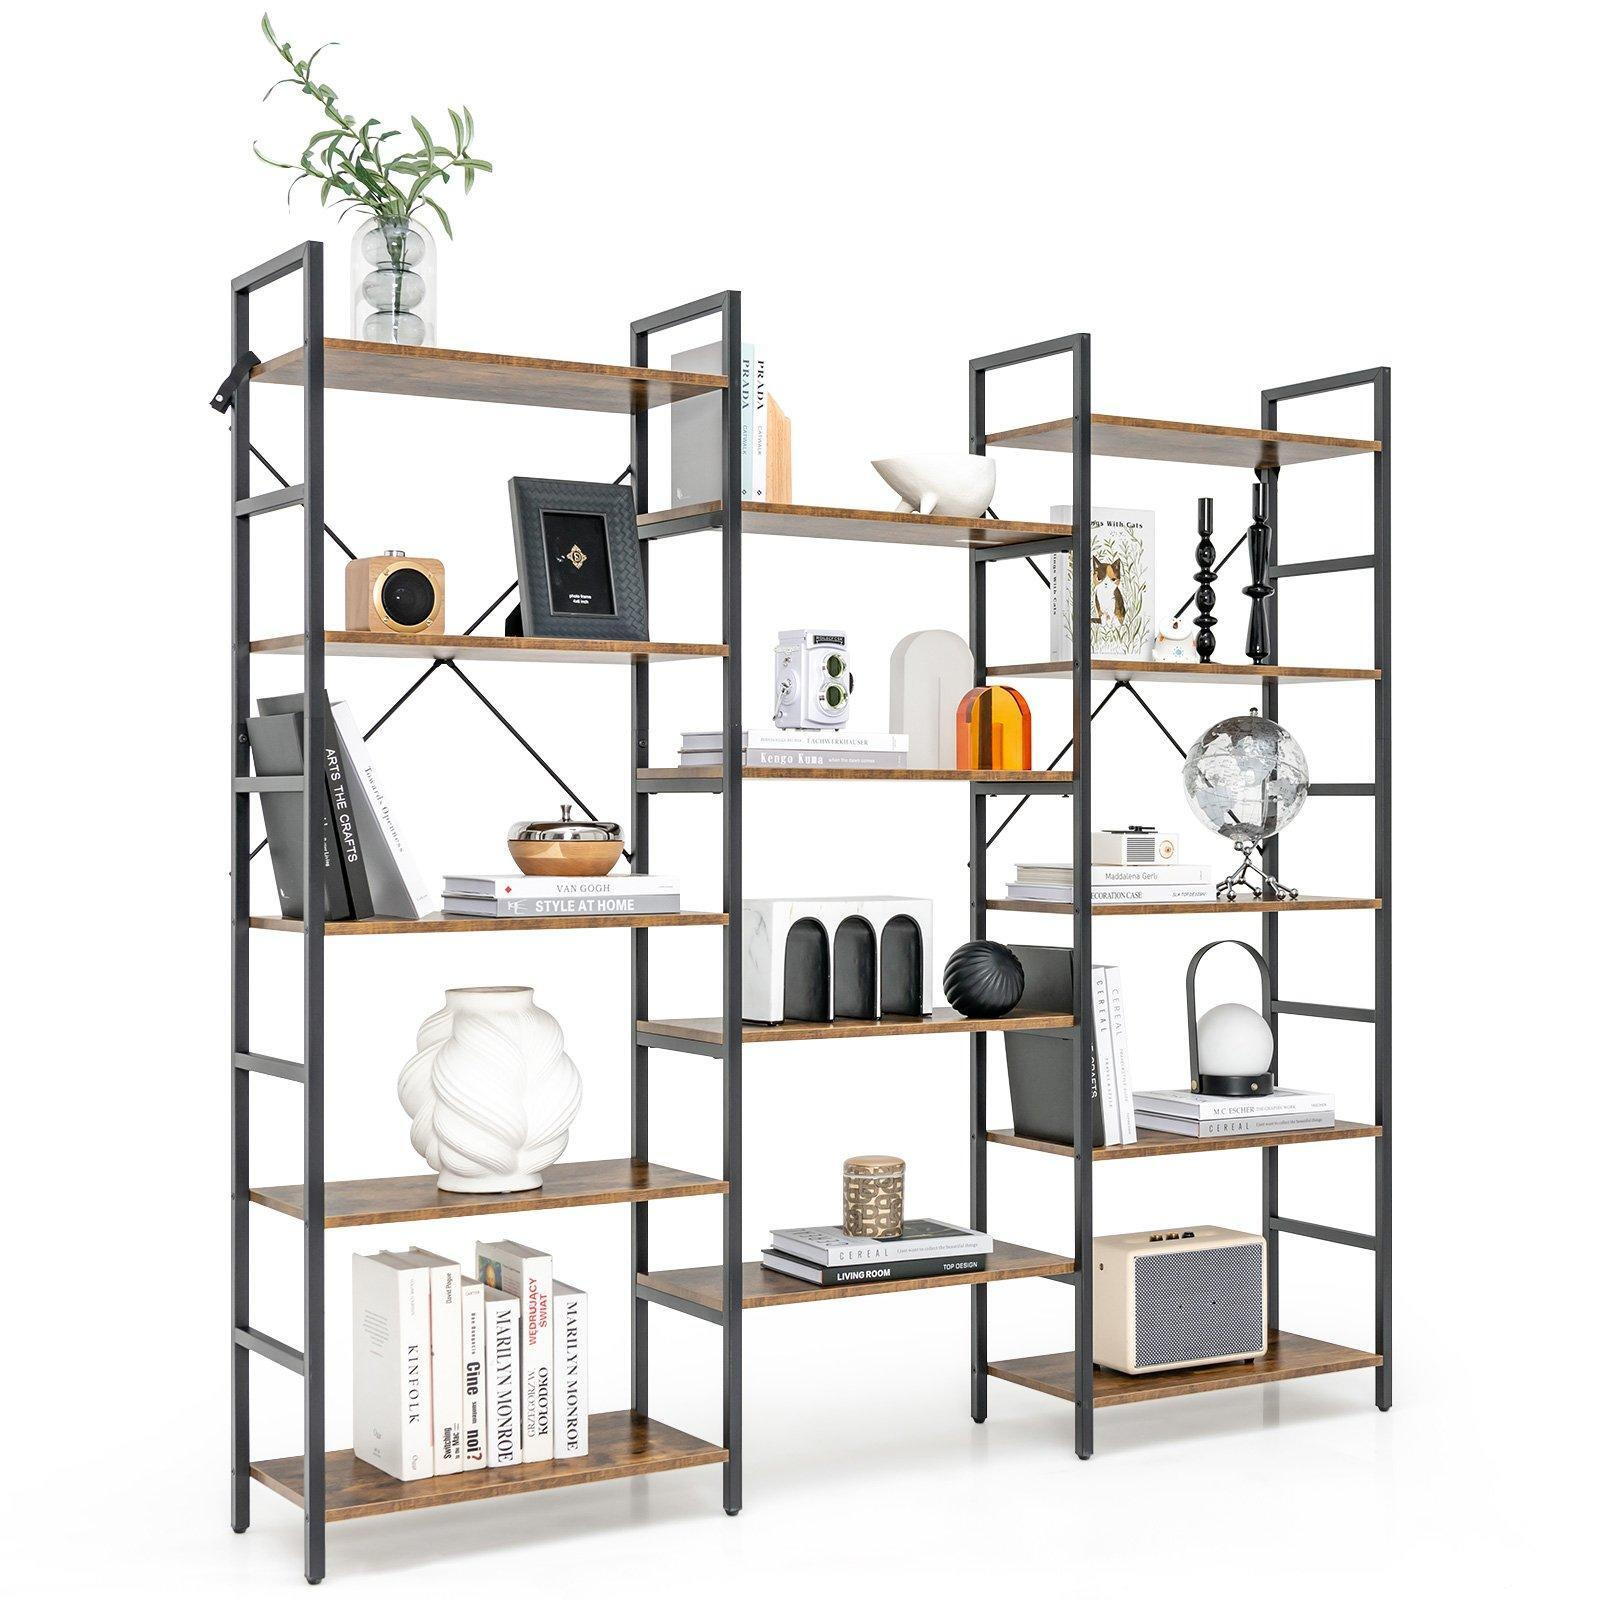 5-tier Industrial Lsdder Bookshelf Floor Standing Bookcase Display Shelf - image 1